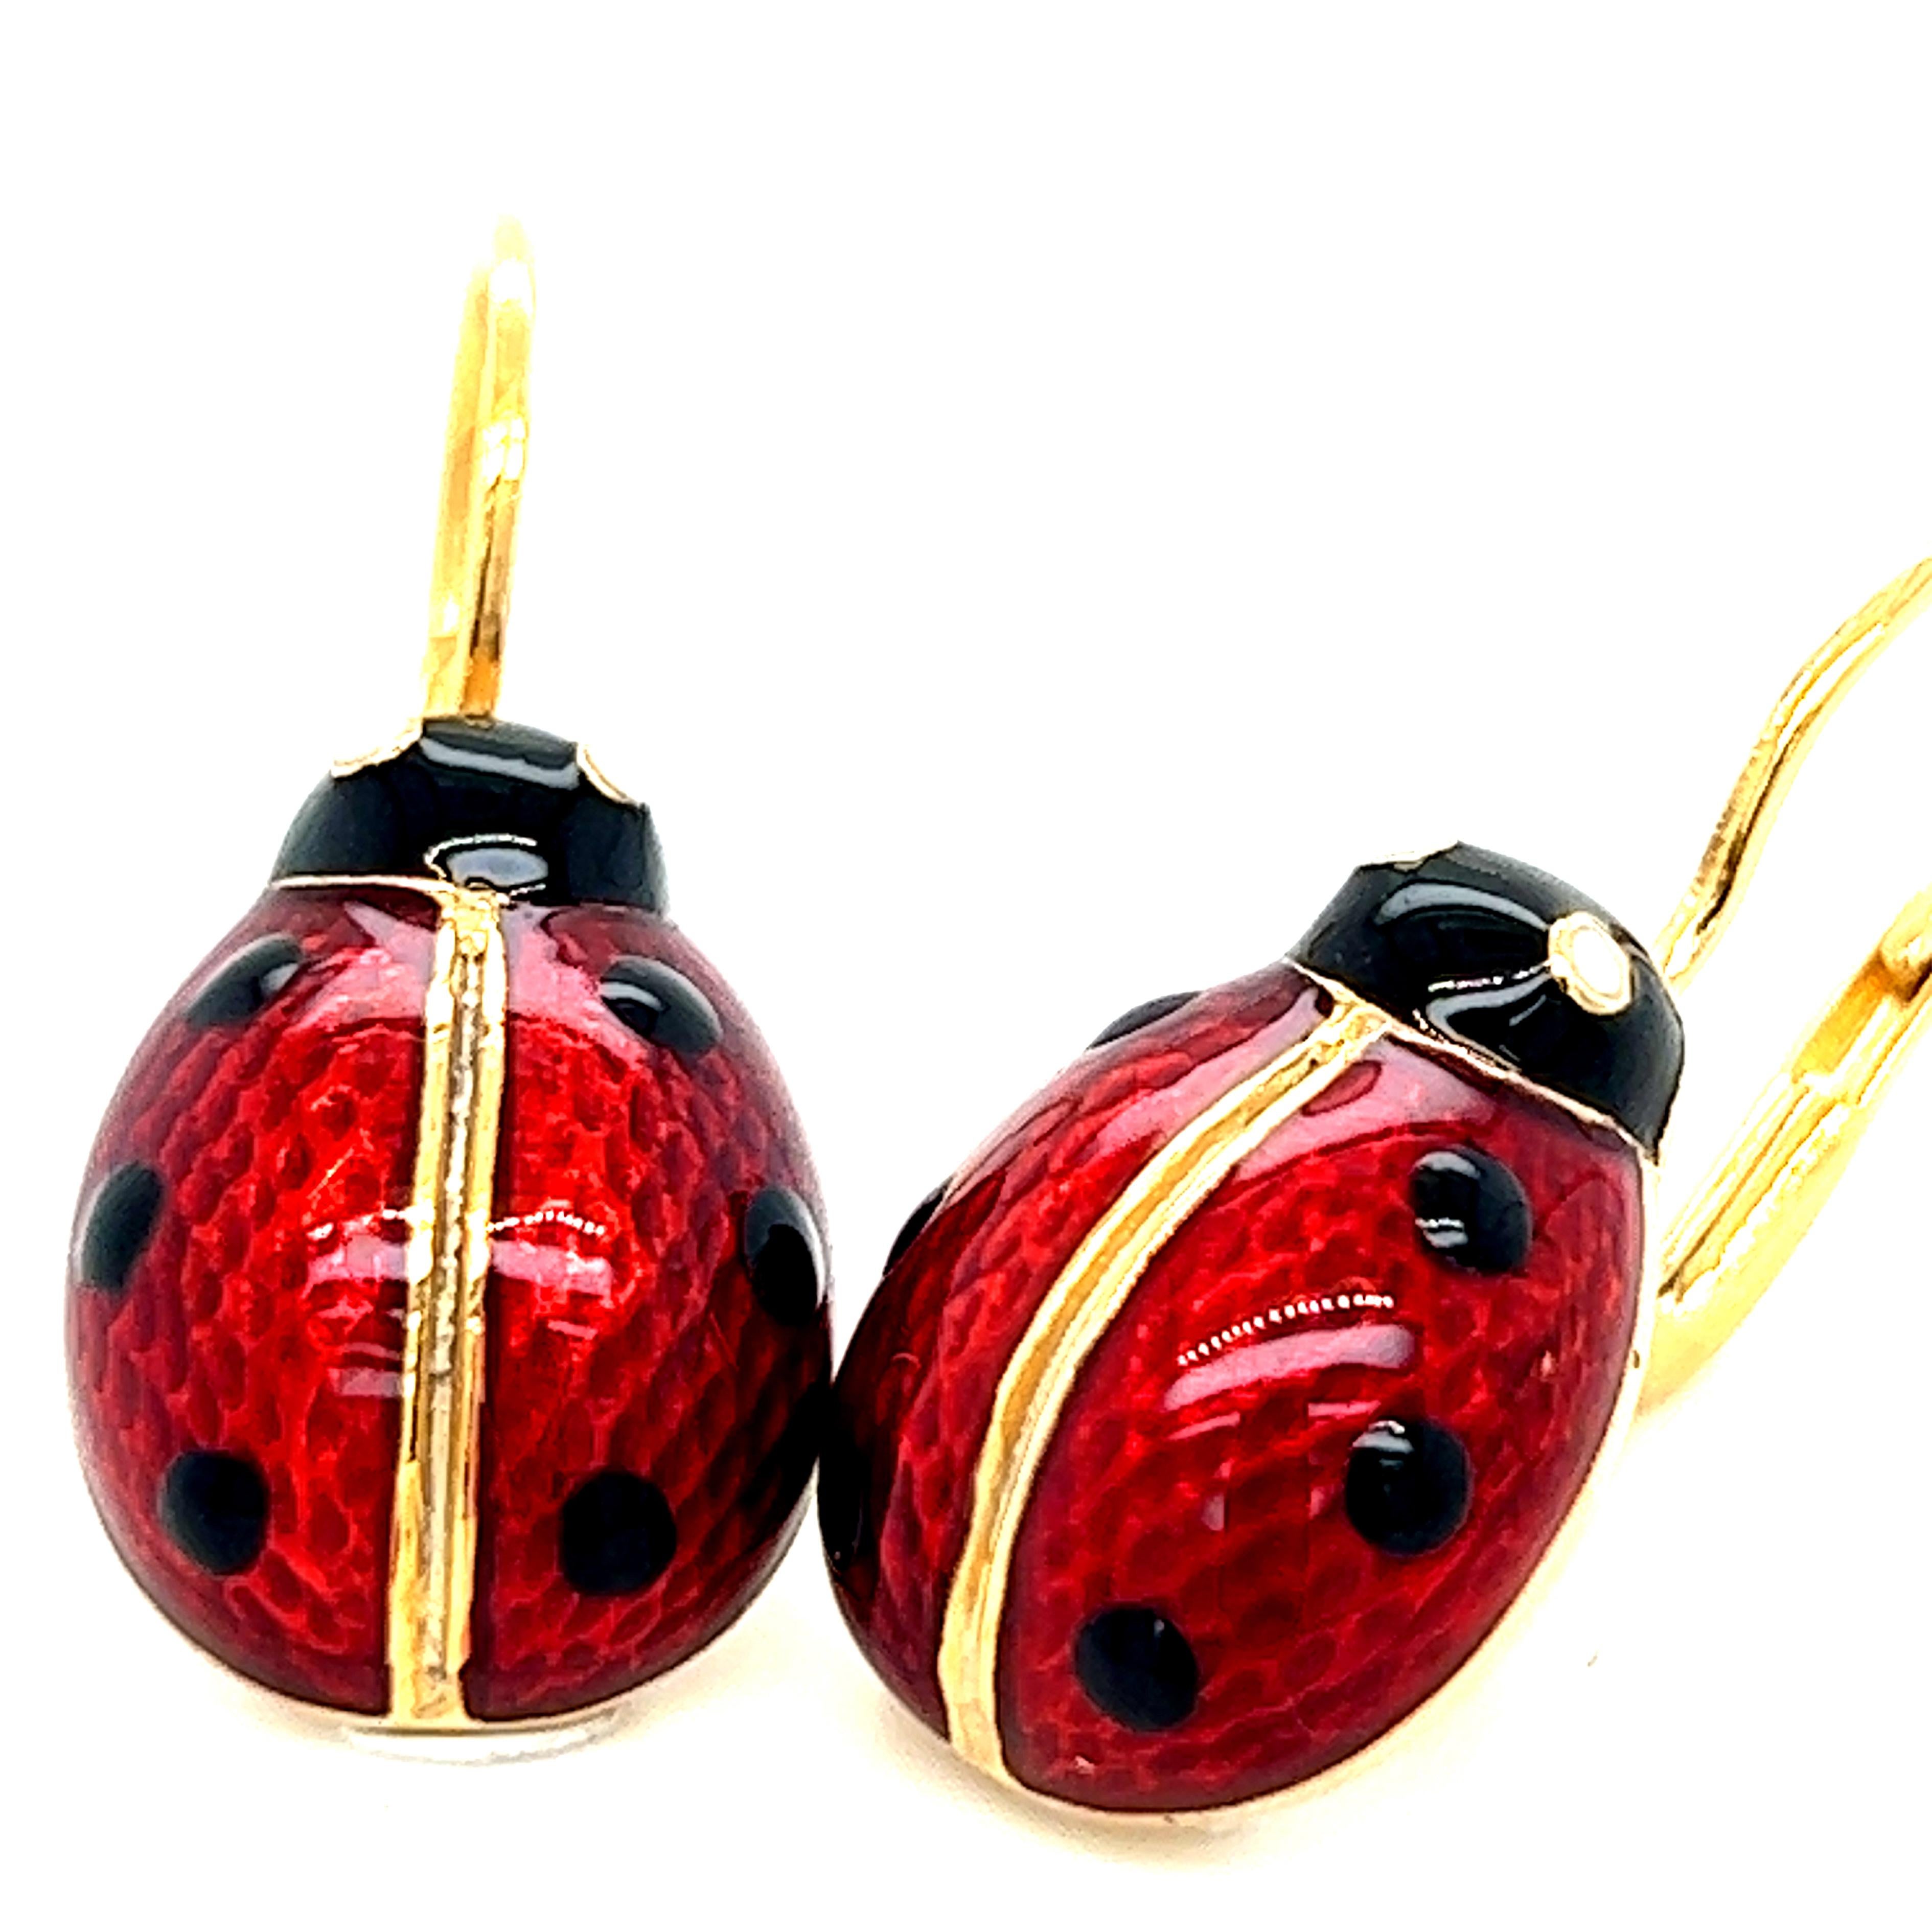 Schicke, zeitlose, aber nicht traditionelle, rot-schwarz gefleckte, handemaillierte Marienkäfer-Ohrringe in Form von Sterlingsilber und vergoldeter Fassung mit Hebelverschluss.
In einem eleganten Tabak-Lederetui und Etui.



